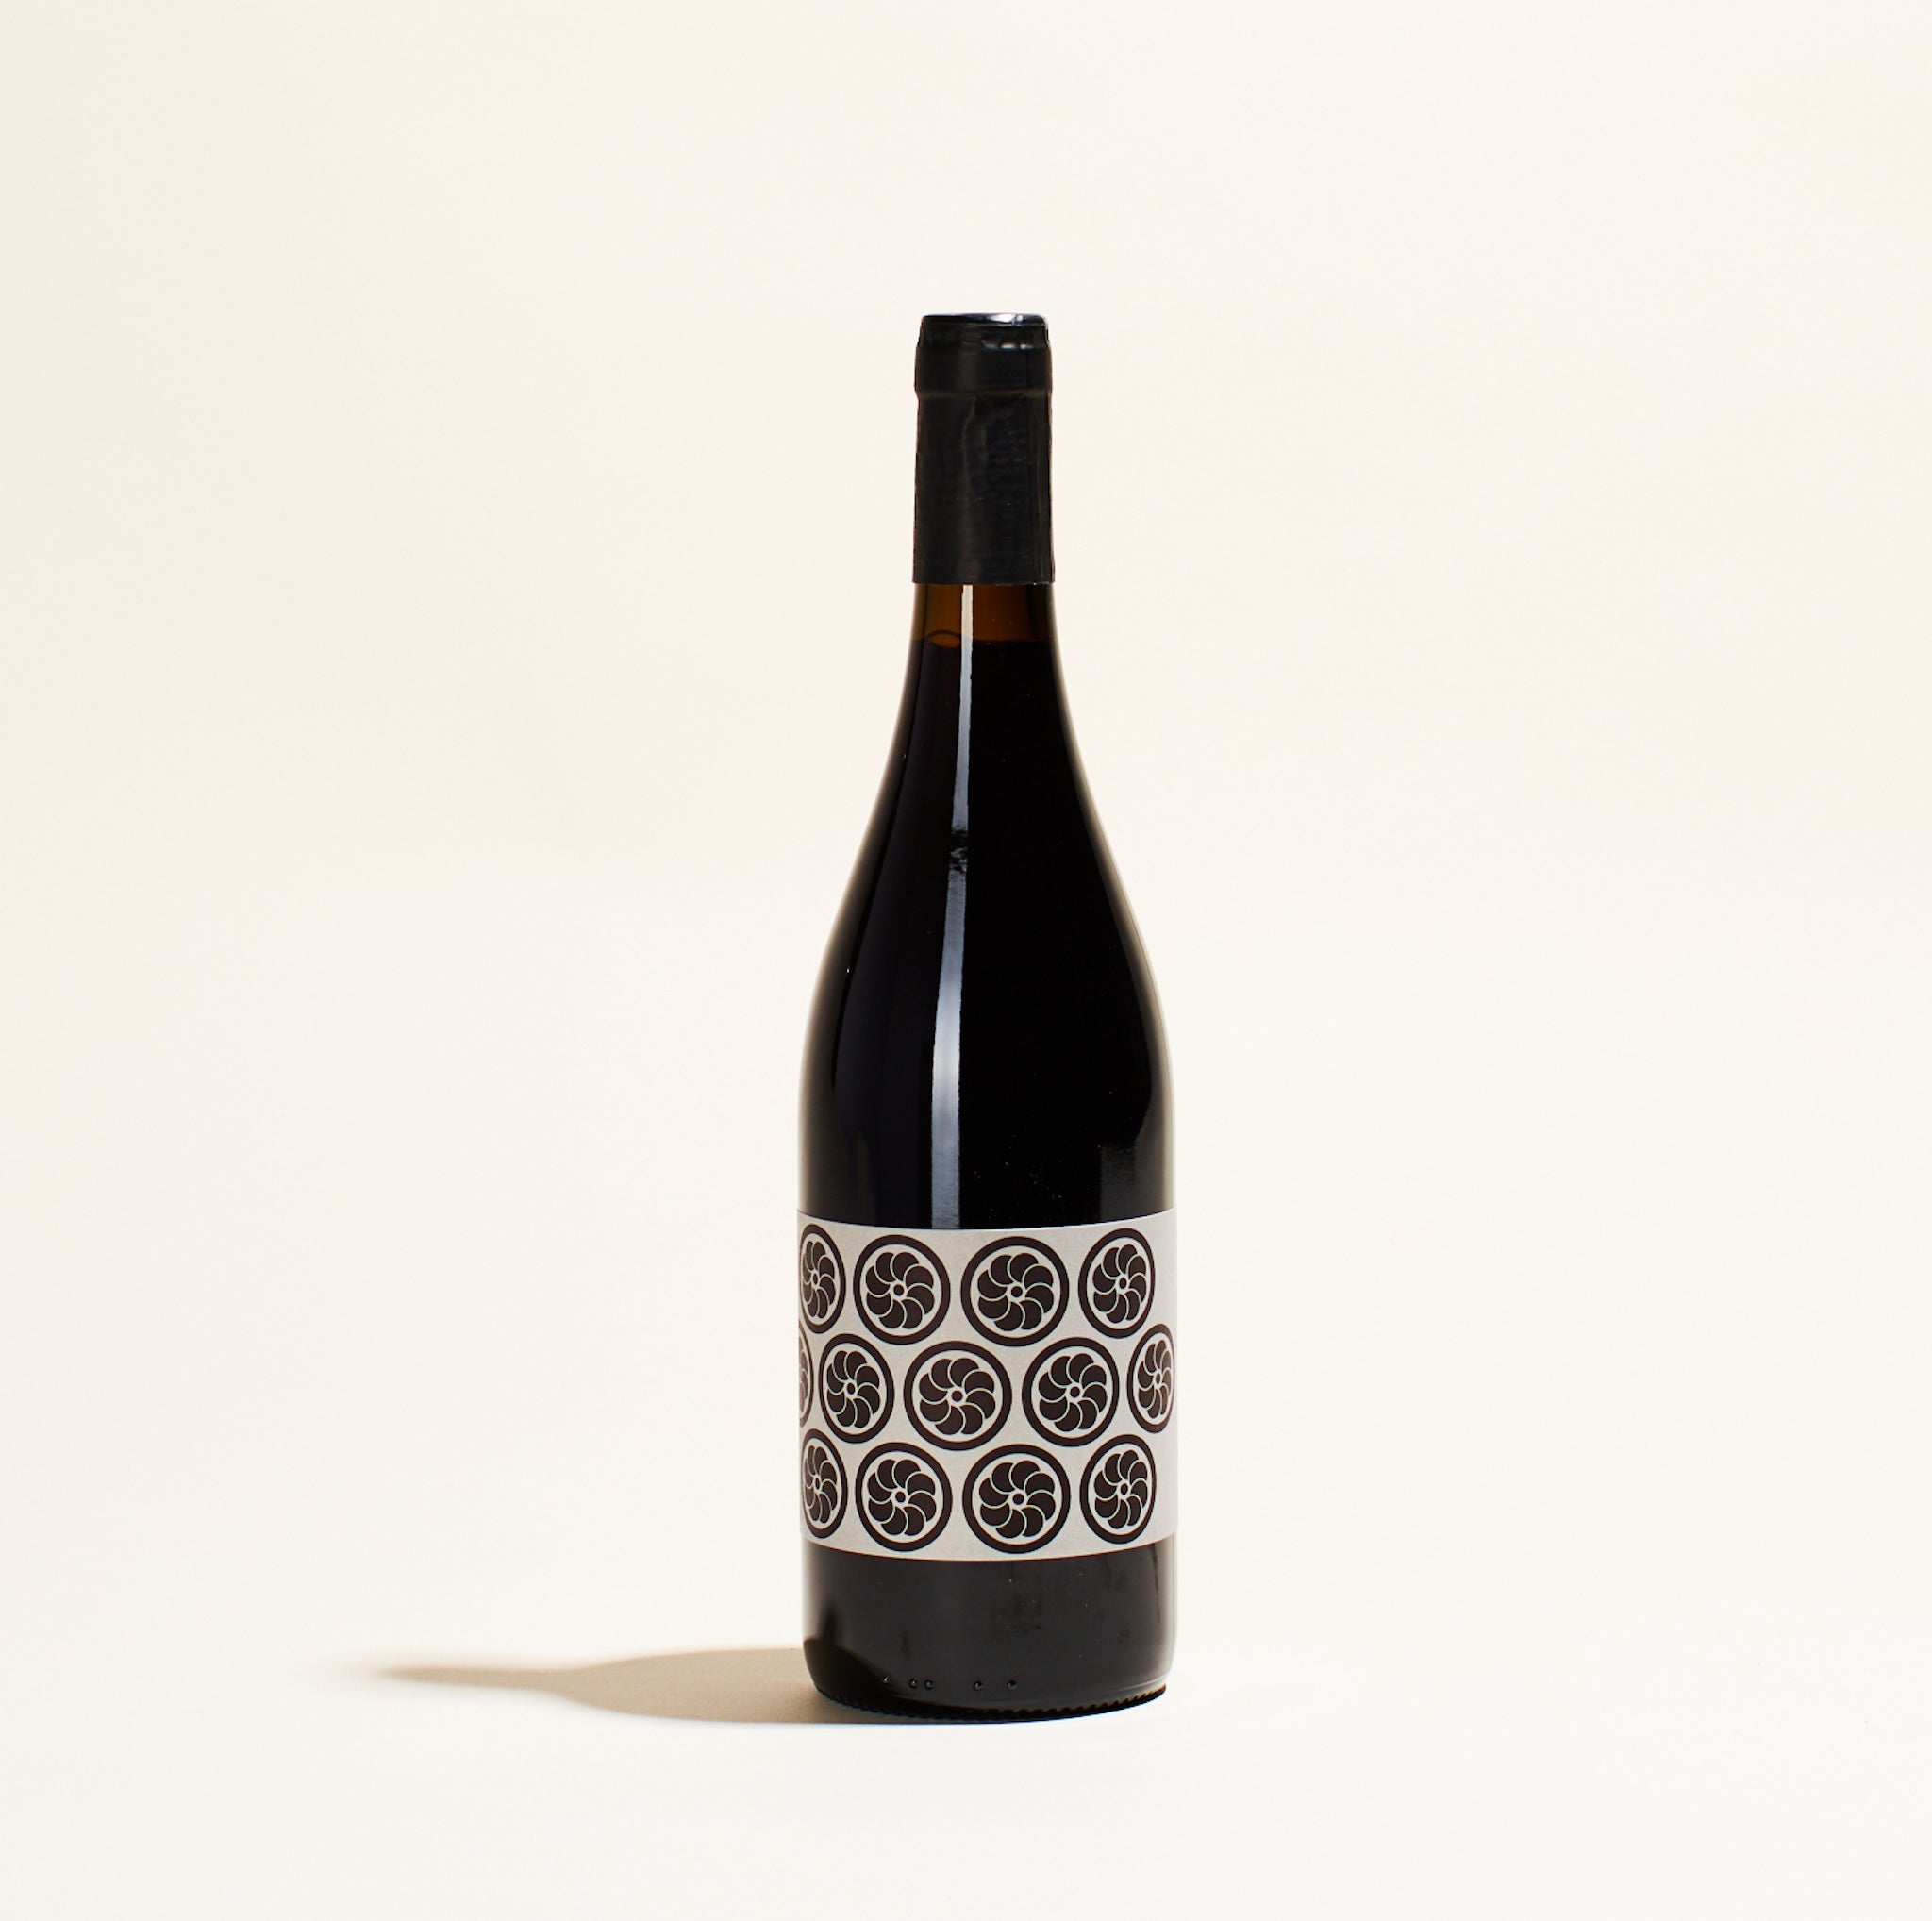 rond noirs les vignes dolivier languedoc france natural red wine bottle